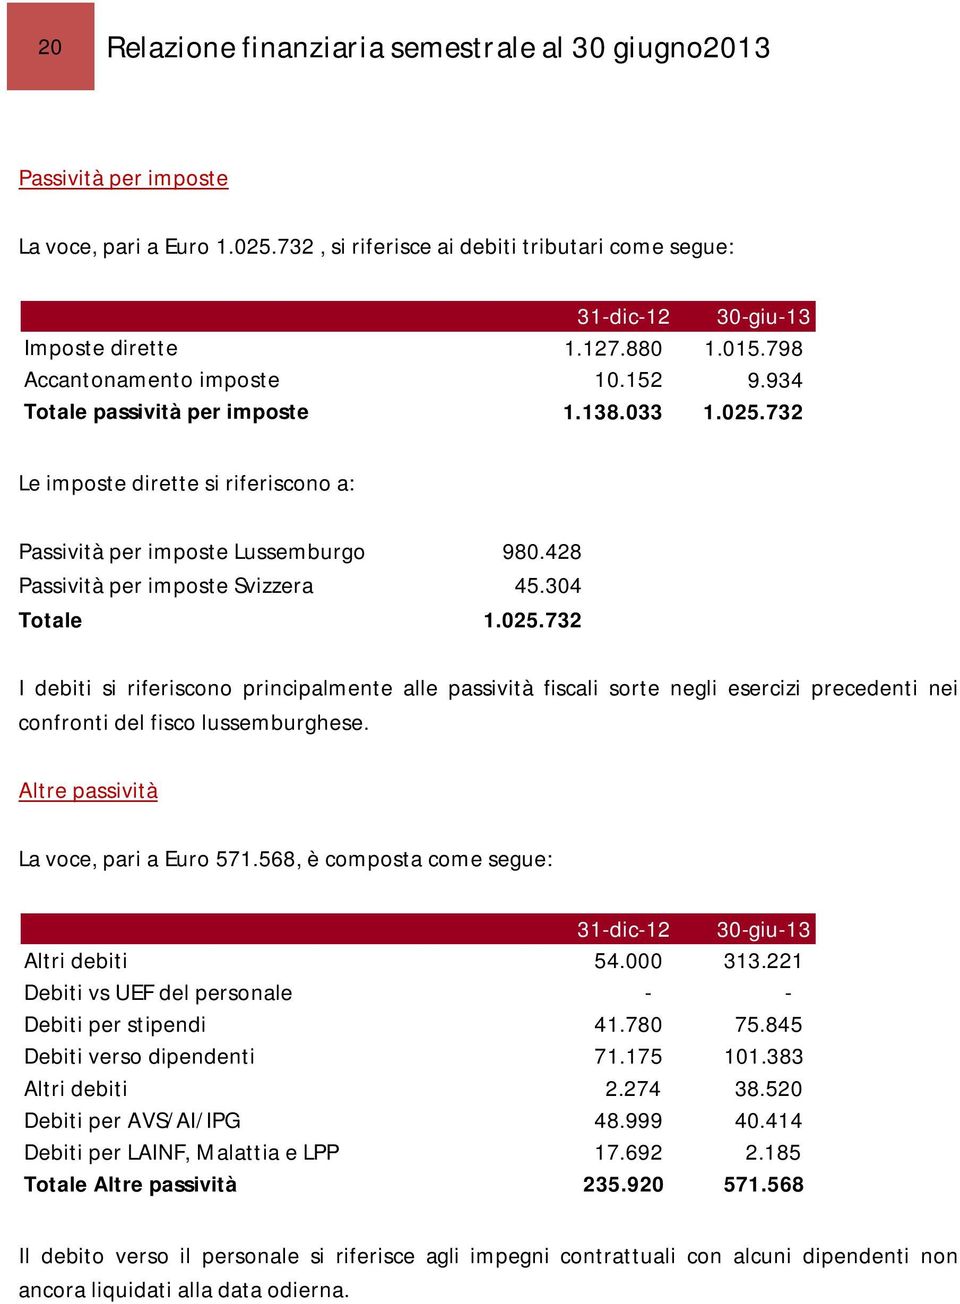 428 Passività per imposte Svizzera 45.304 Totale 1.025.732 I debiti si riferiscono principalmente alle passività fiscali sorte negli esercizi precedenti nei confronti del fisco lussemburghese.